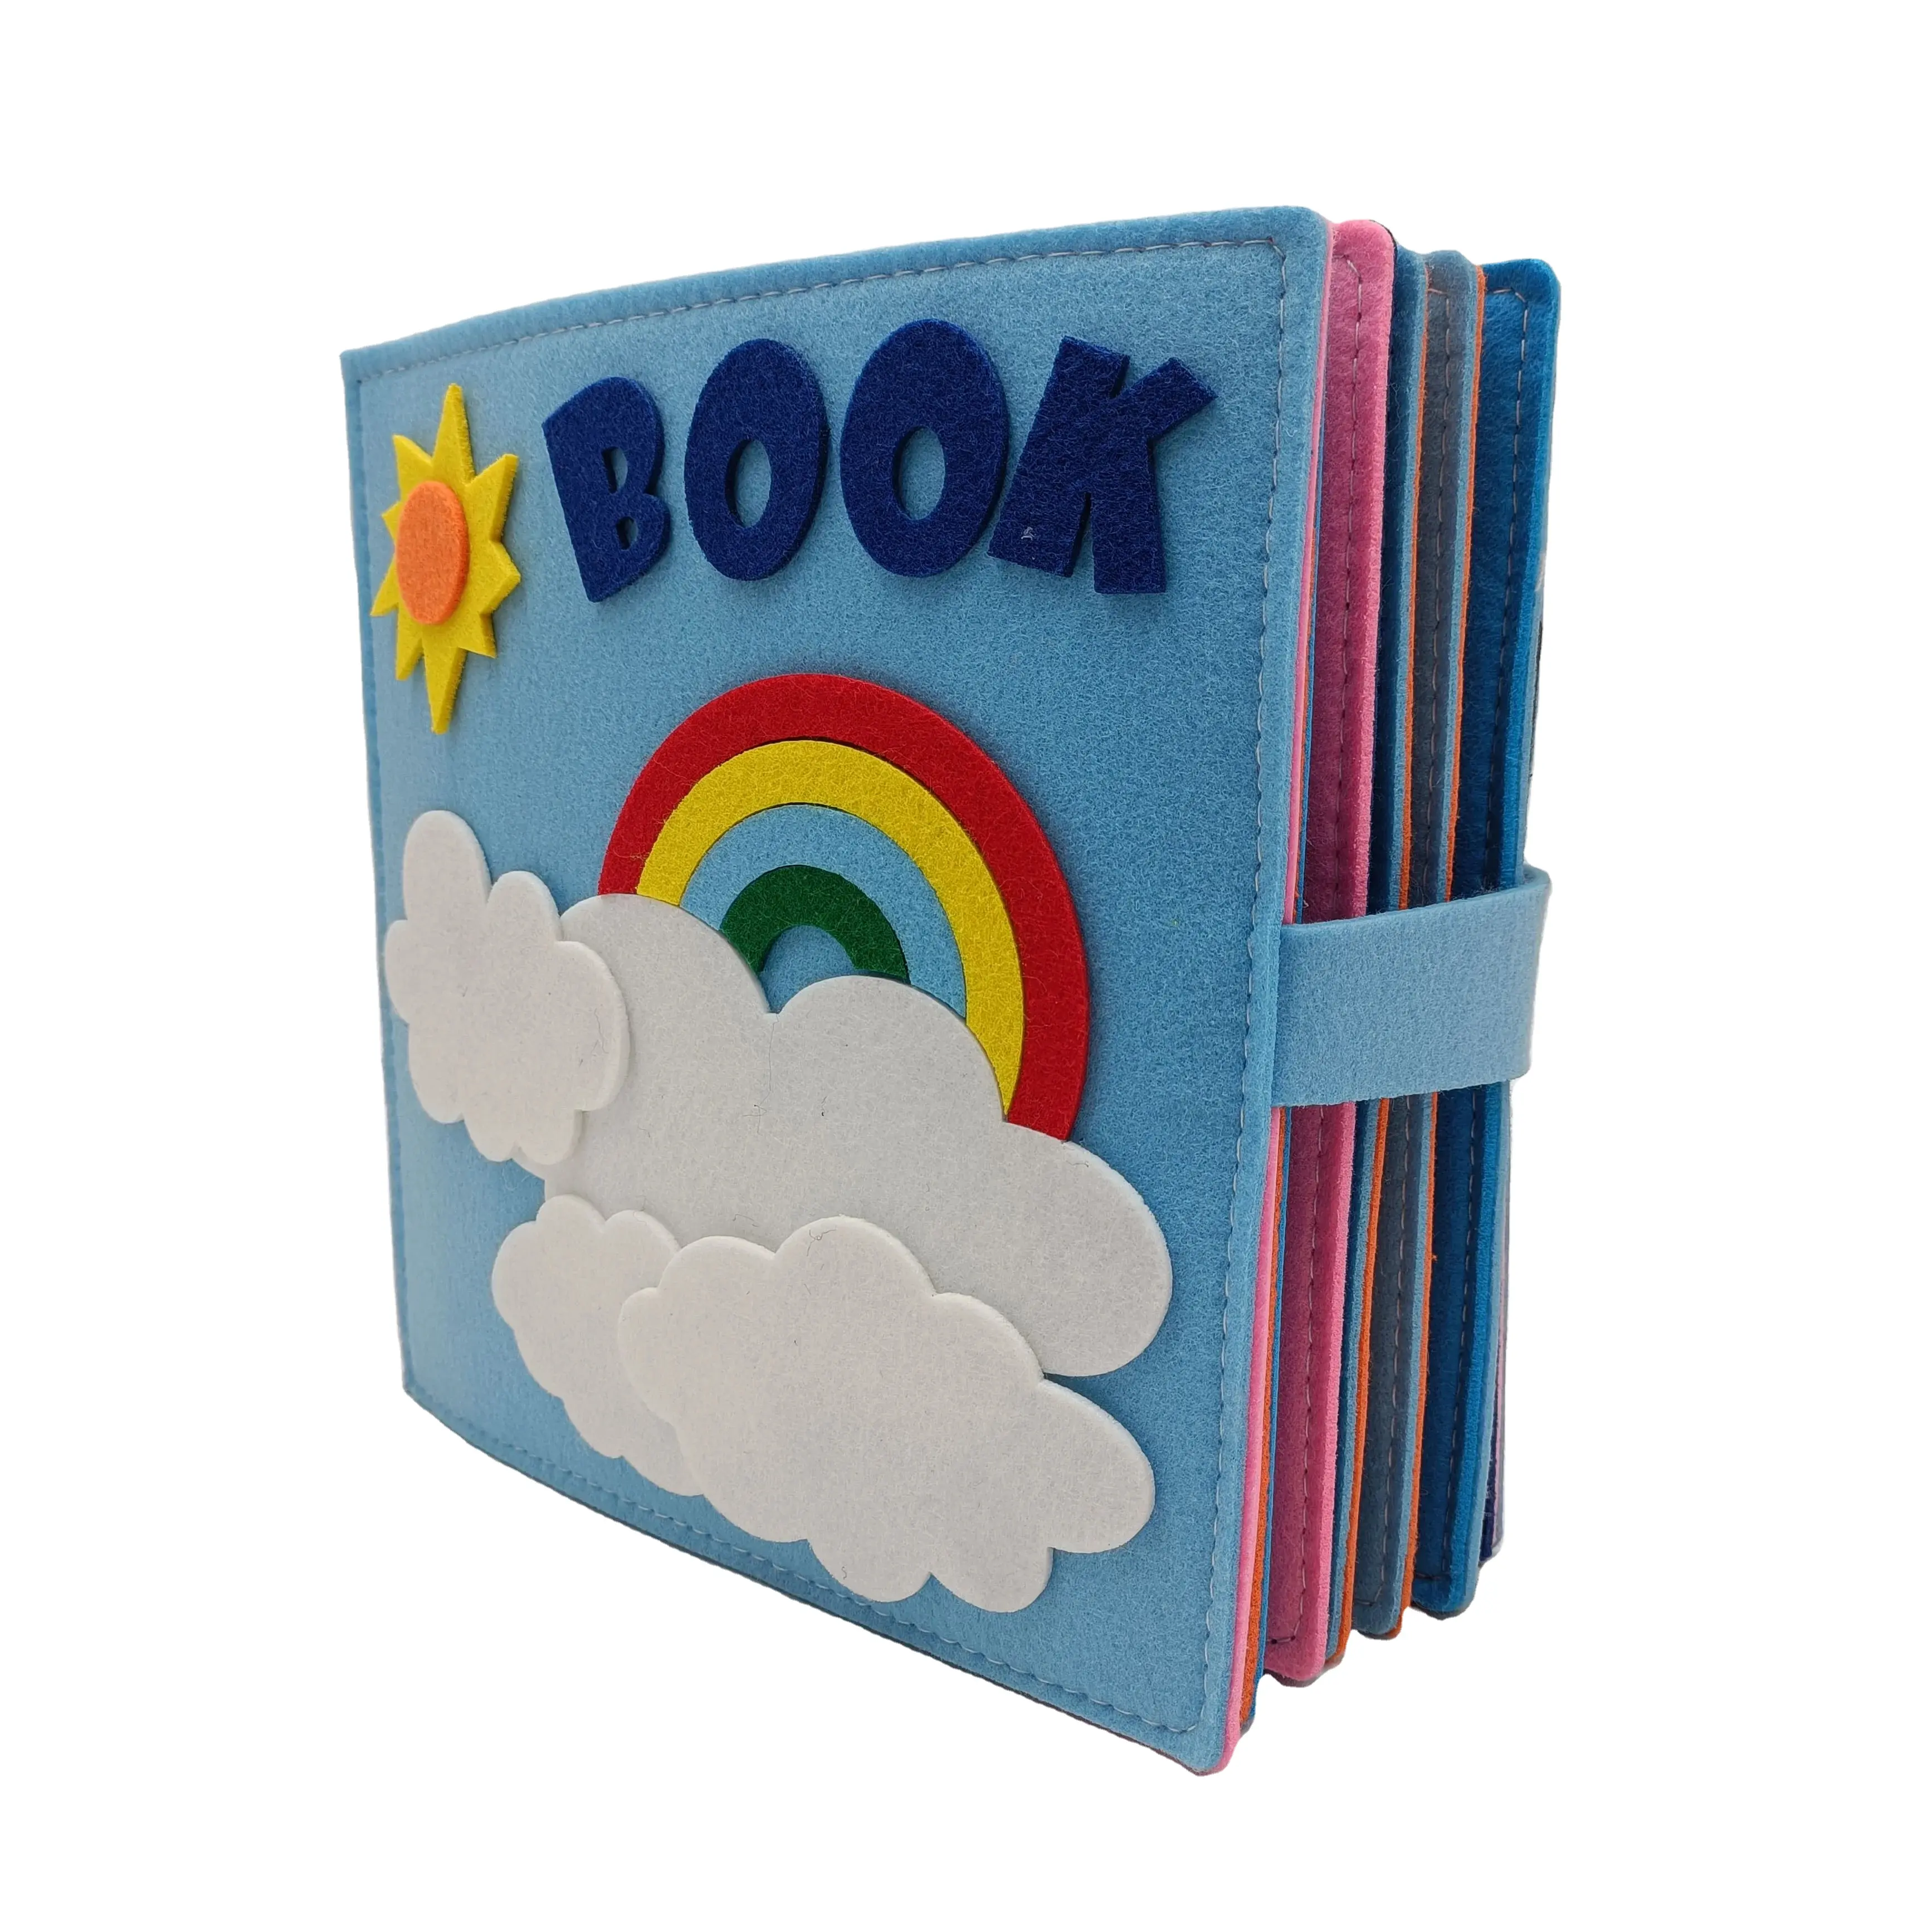 Kleinkinder beschäftigt Board 3D Baby Filz Regenbogen Buch Montessori Spielzeug für 1-4 Jahre alte Jungen Mädchen